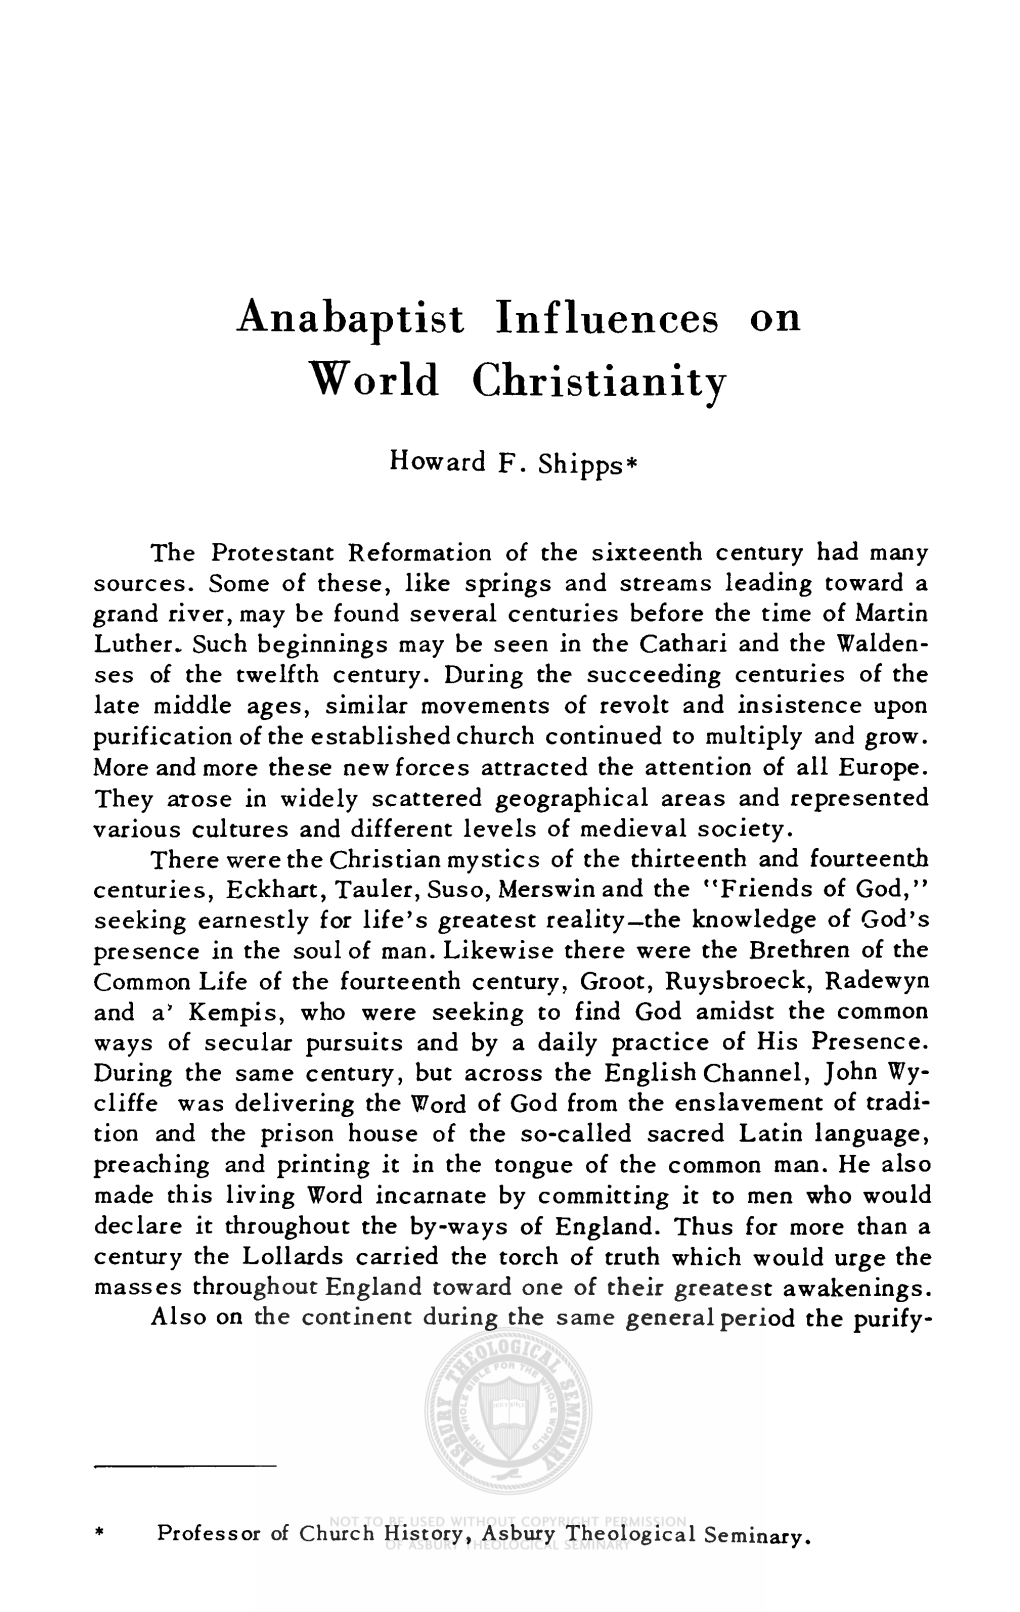 Anabaptist Influences on World Christianity